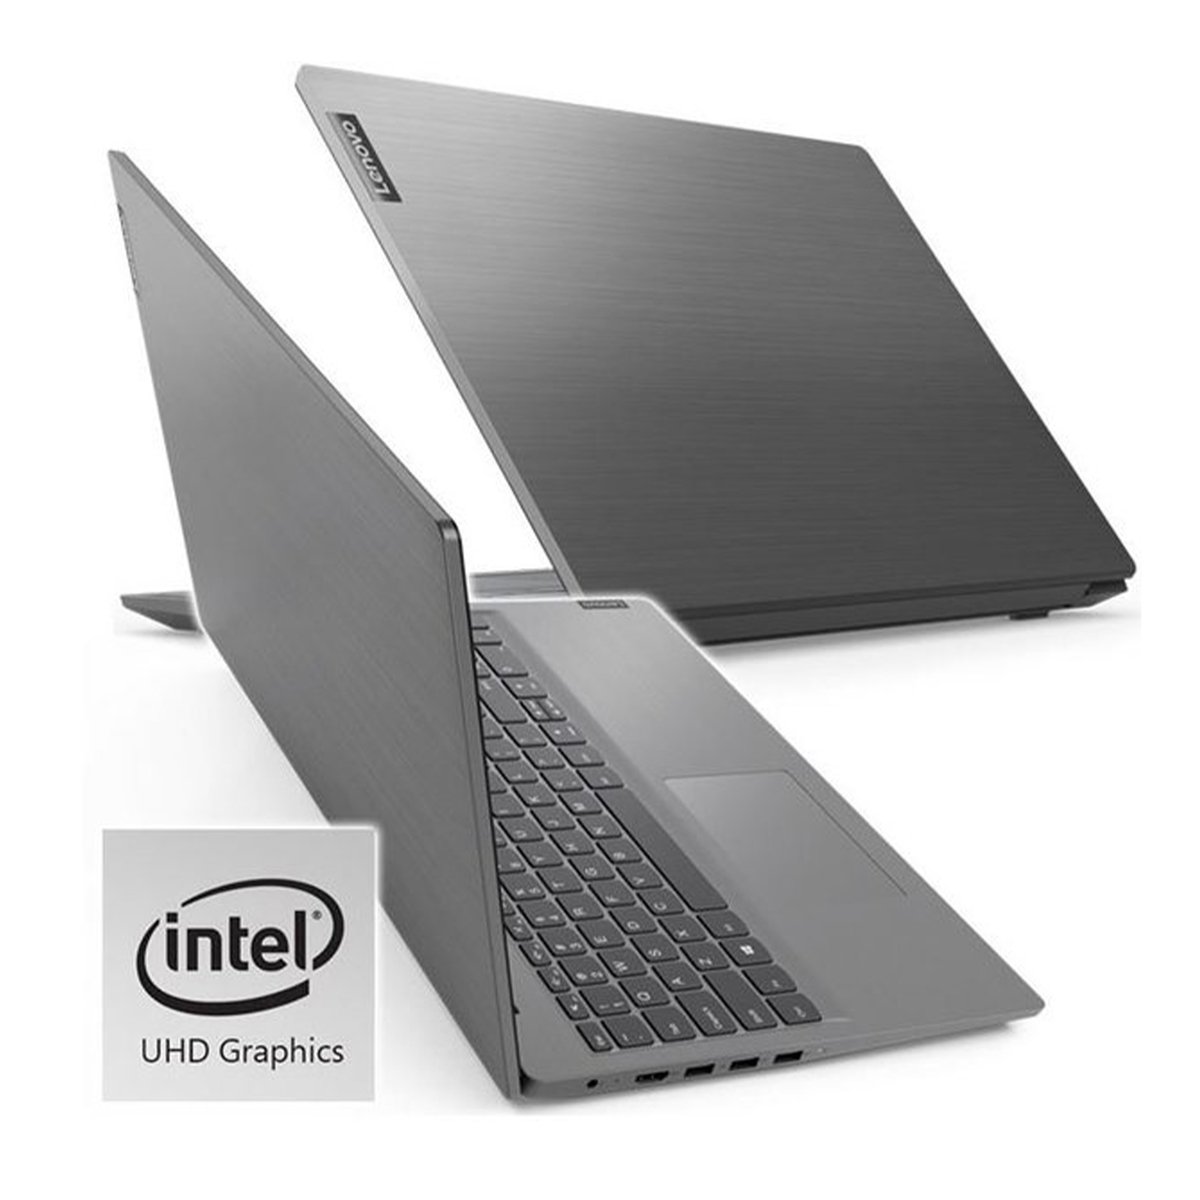 Lenovo V14-82KA003CAX Laptop Intel Core i3-1115G4, 4GB RAM,1TB HDD,14.0 inch FHD Screen, Windows 10, Black